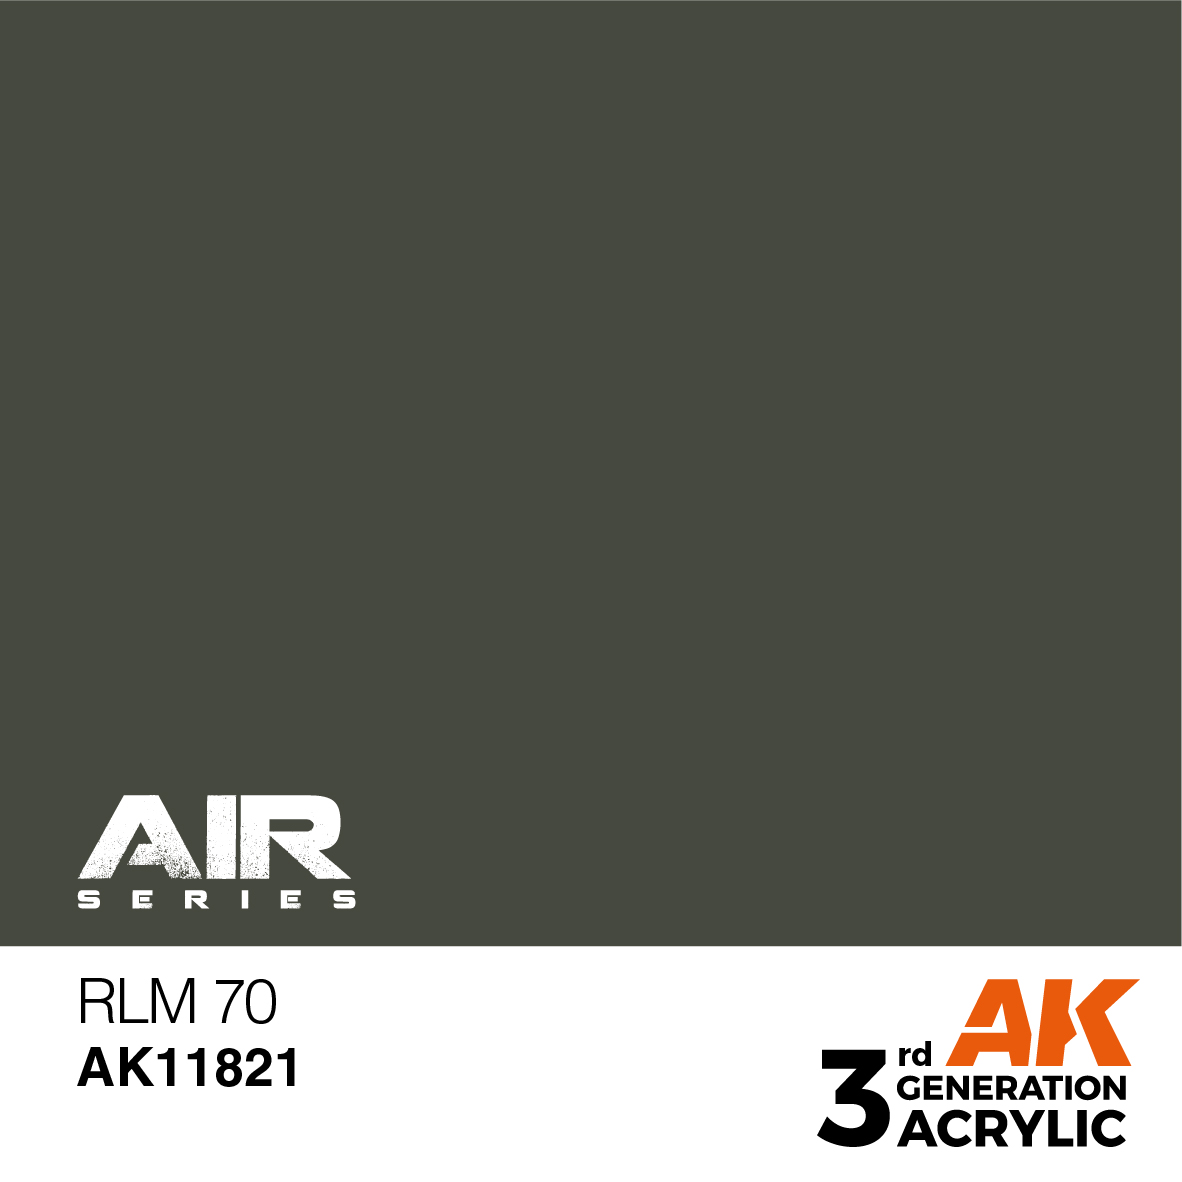 RLM 70 – AIR